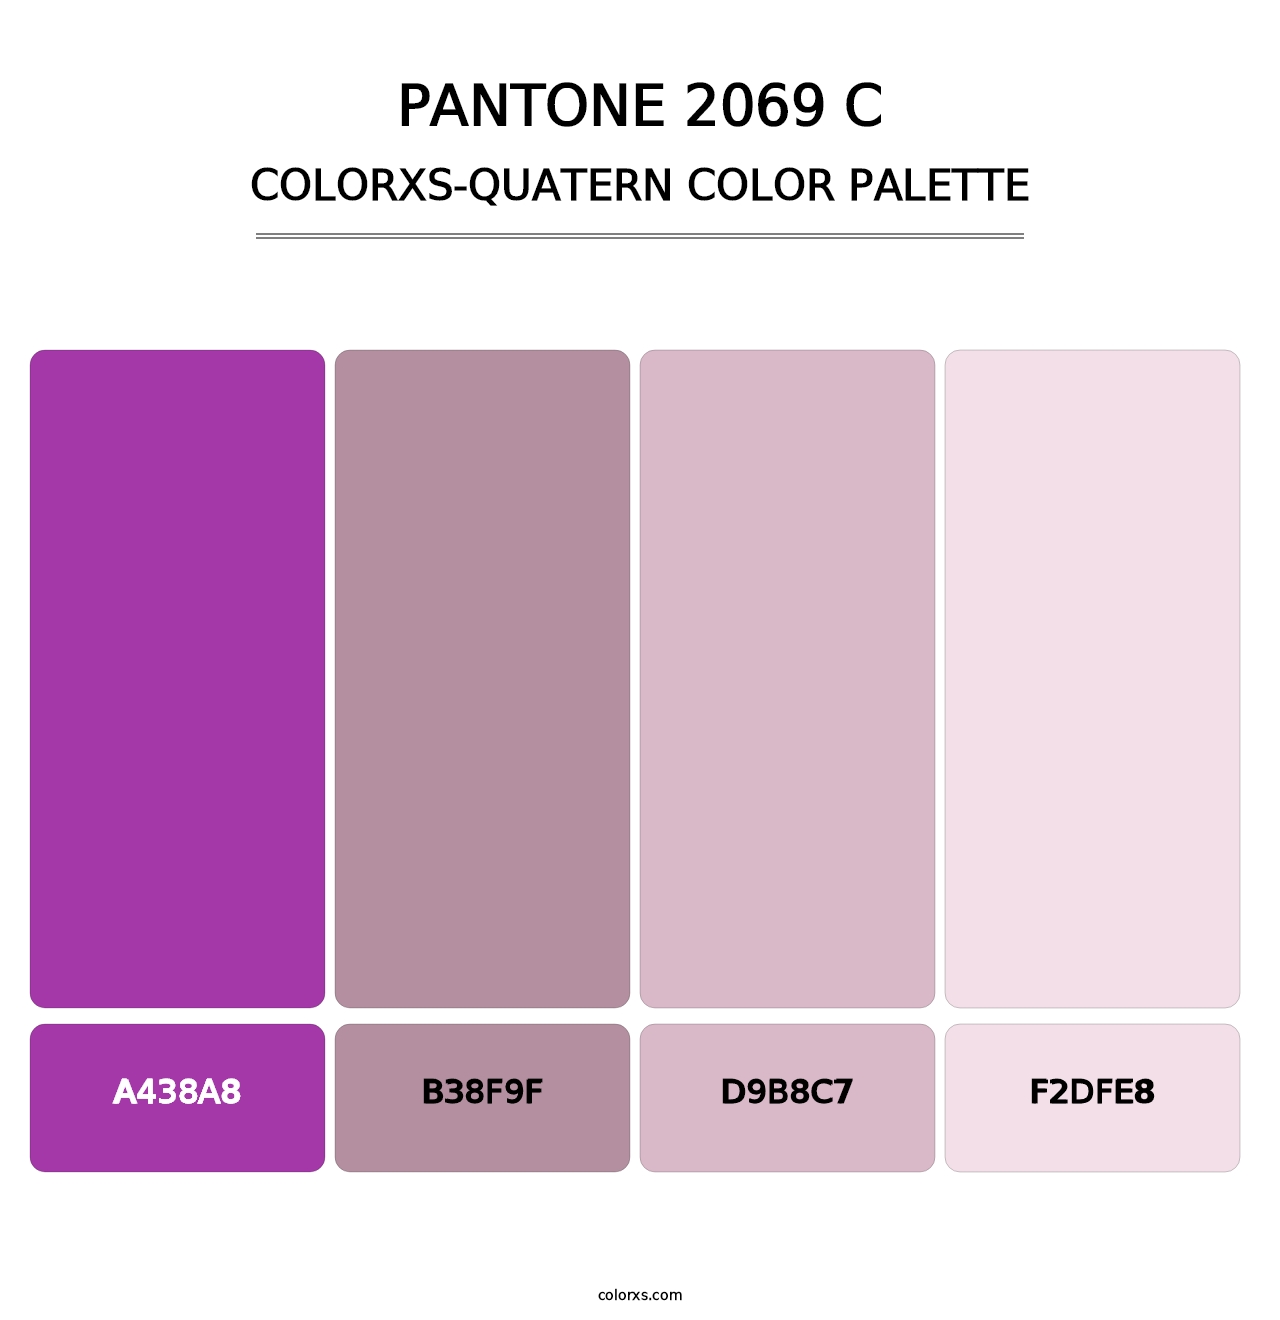 PANTONE 2069 C - Colorxs Quatern Palette